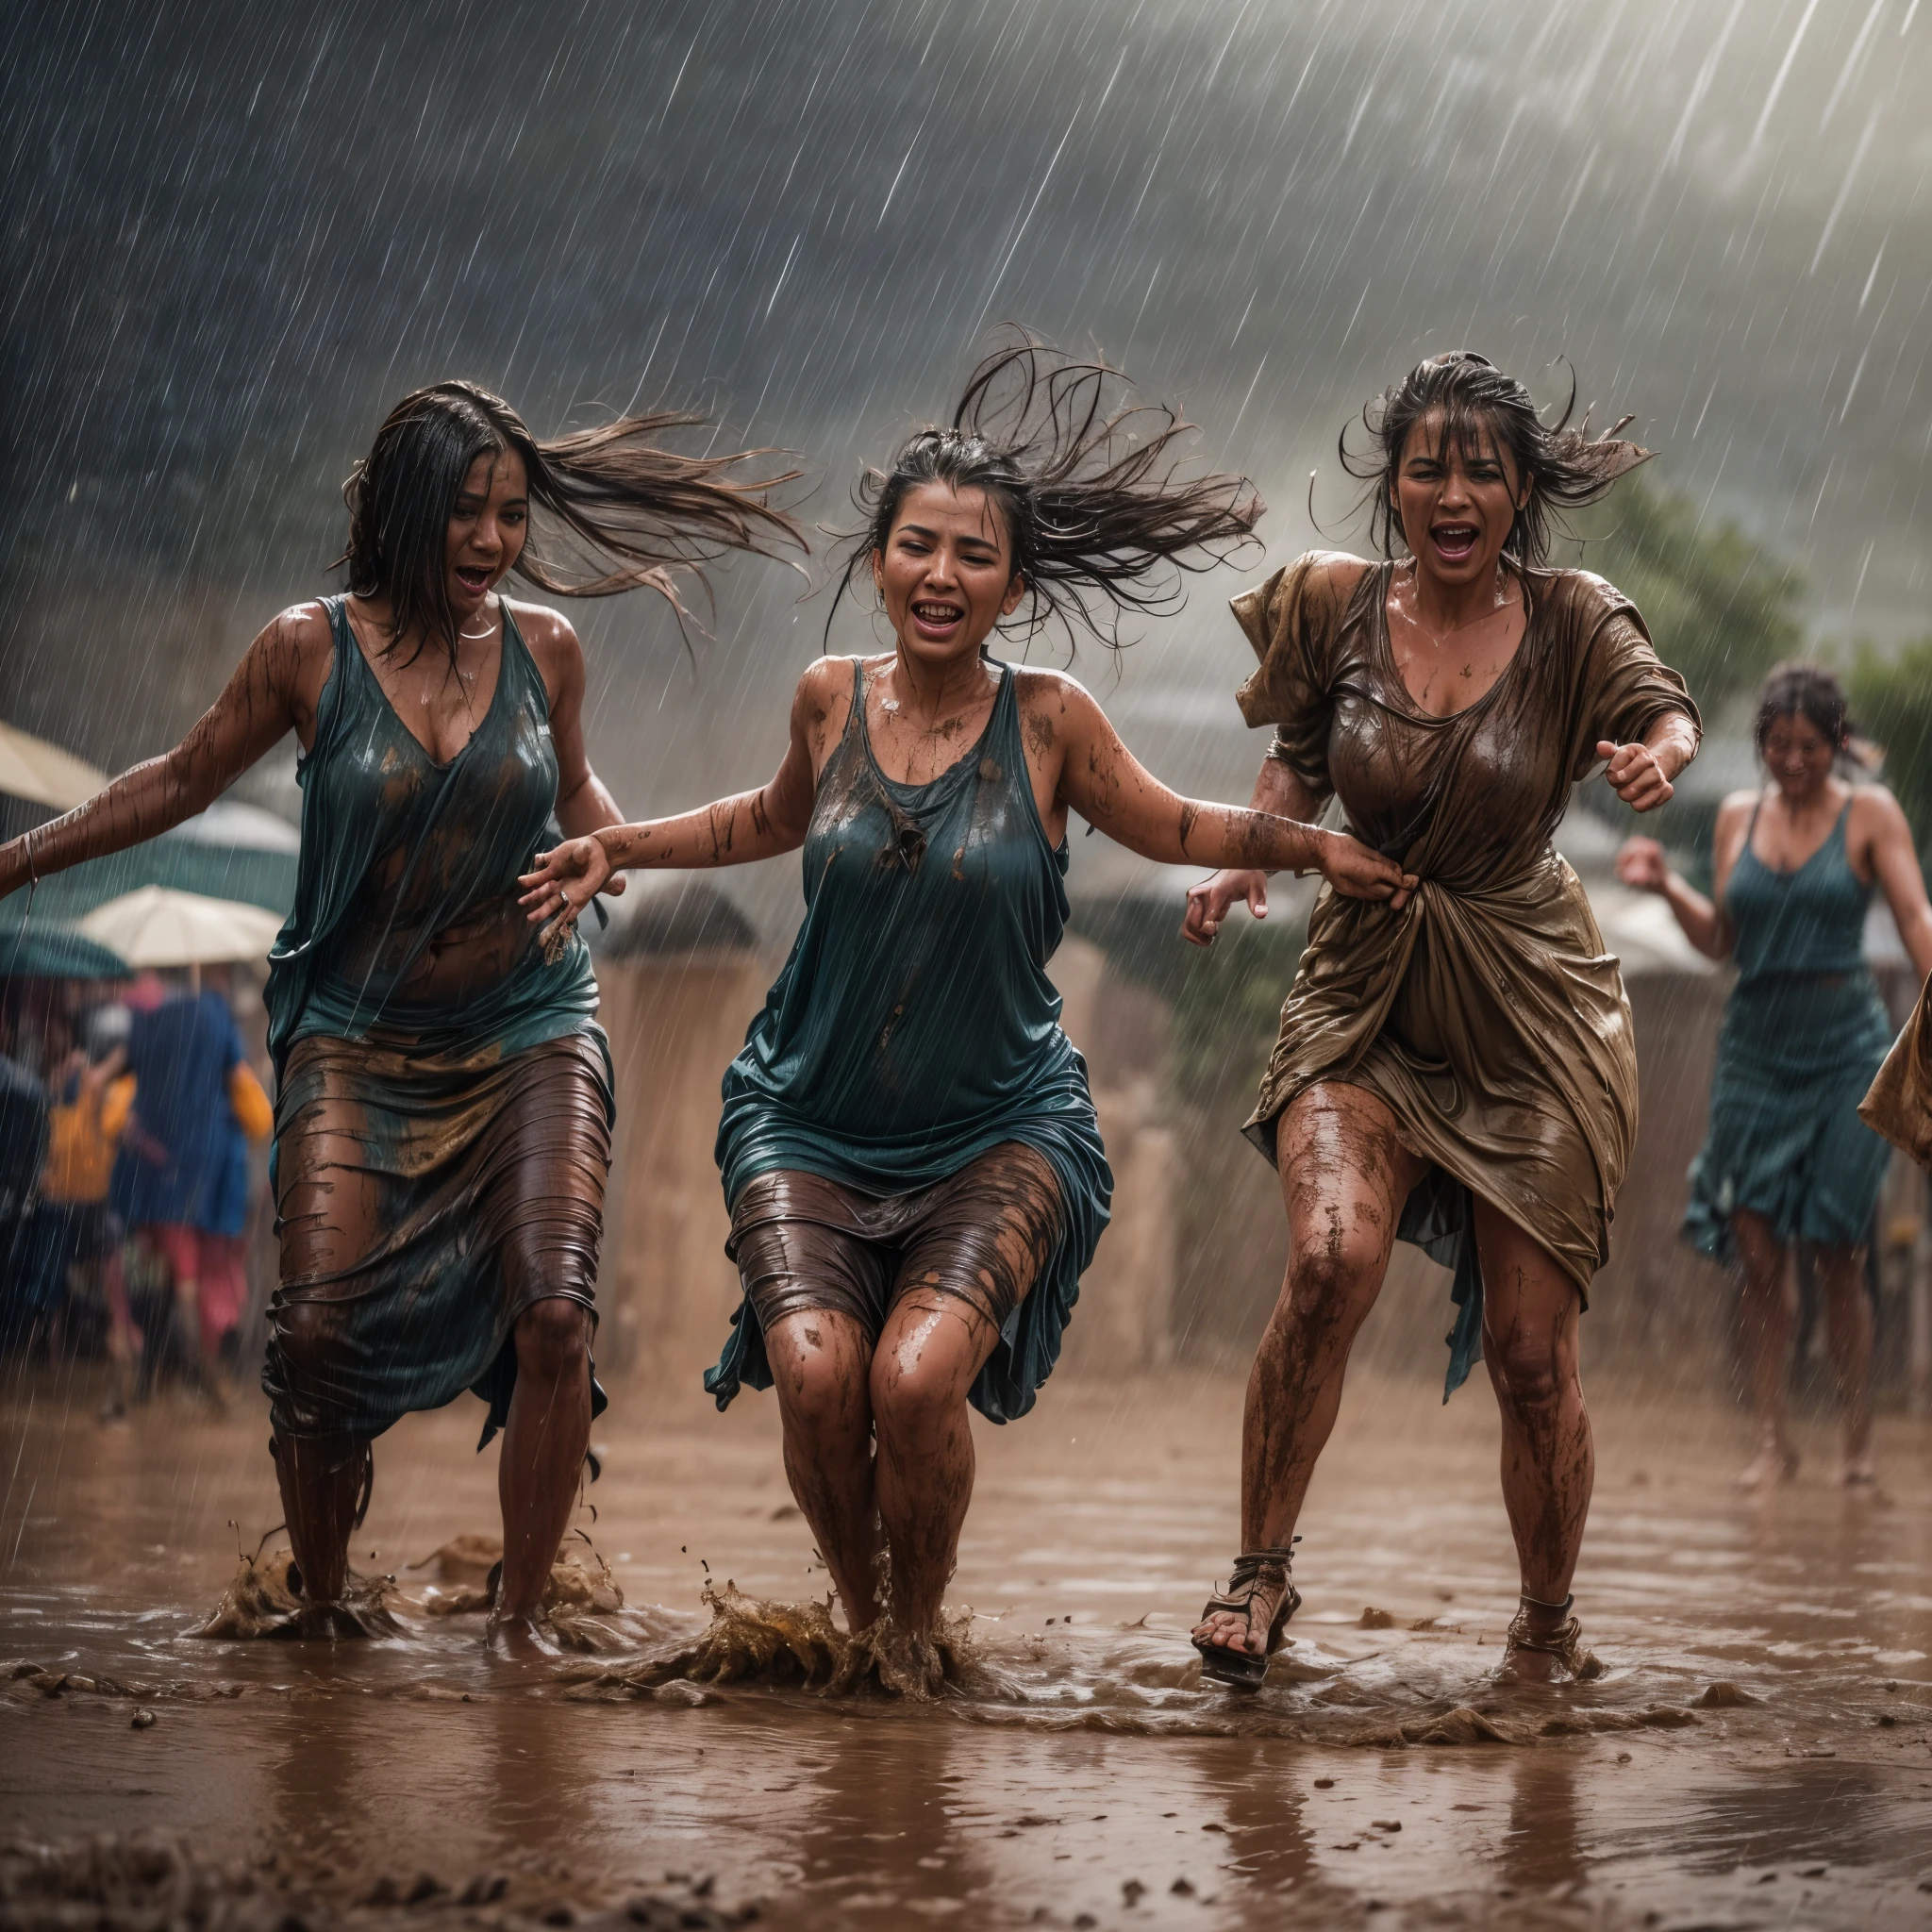 ((最好的质量)), ((杰作)), (详细的), women performing 雨 dance, 沙漠, 泥dy ground, 暴风雨的天空, 倾盆大雨, falling 雨, 雨 drops, 庆祝舞蹈, 湿衣服, 湿身, 湿的头发, 戏剧灯光, 风, 雨, 泥